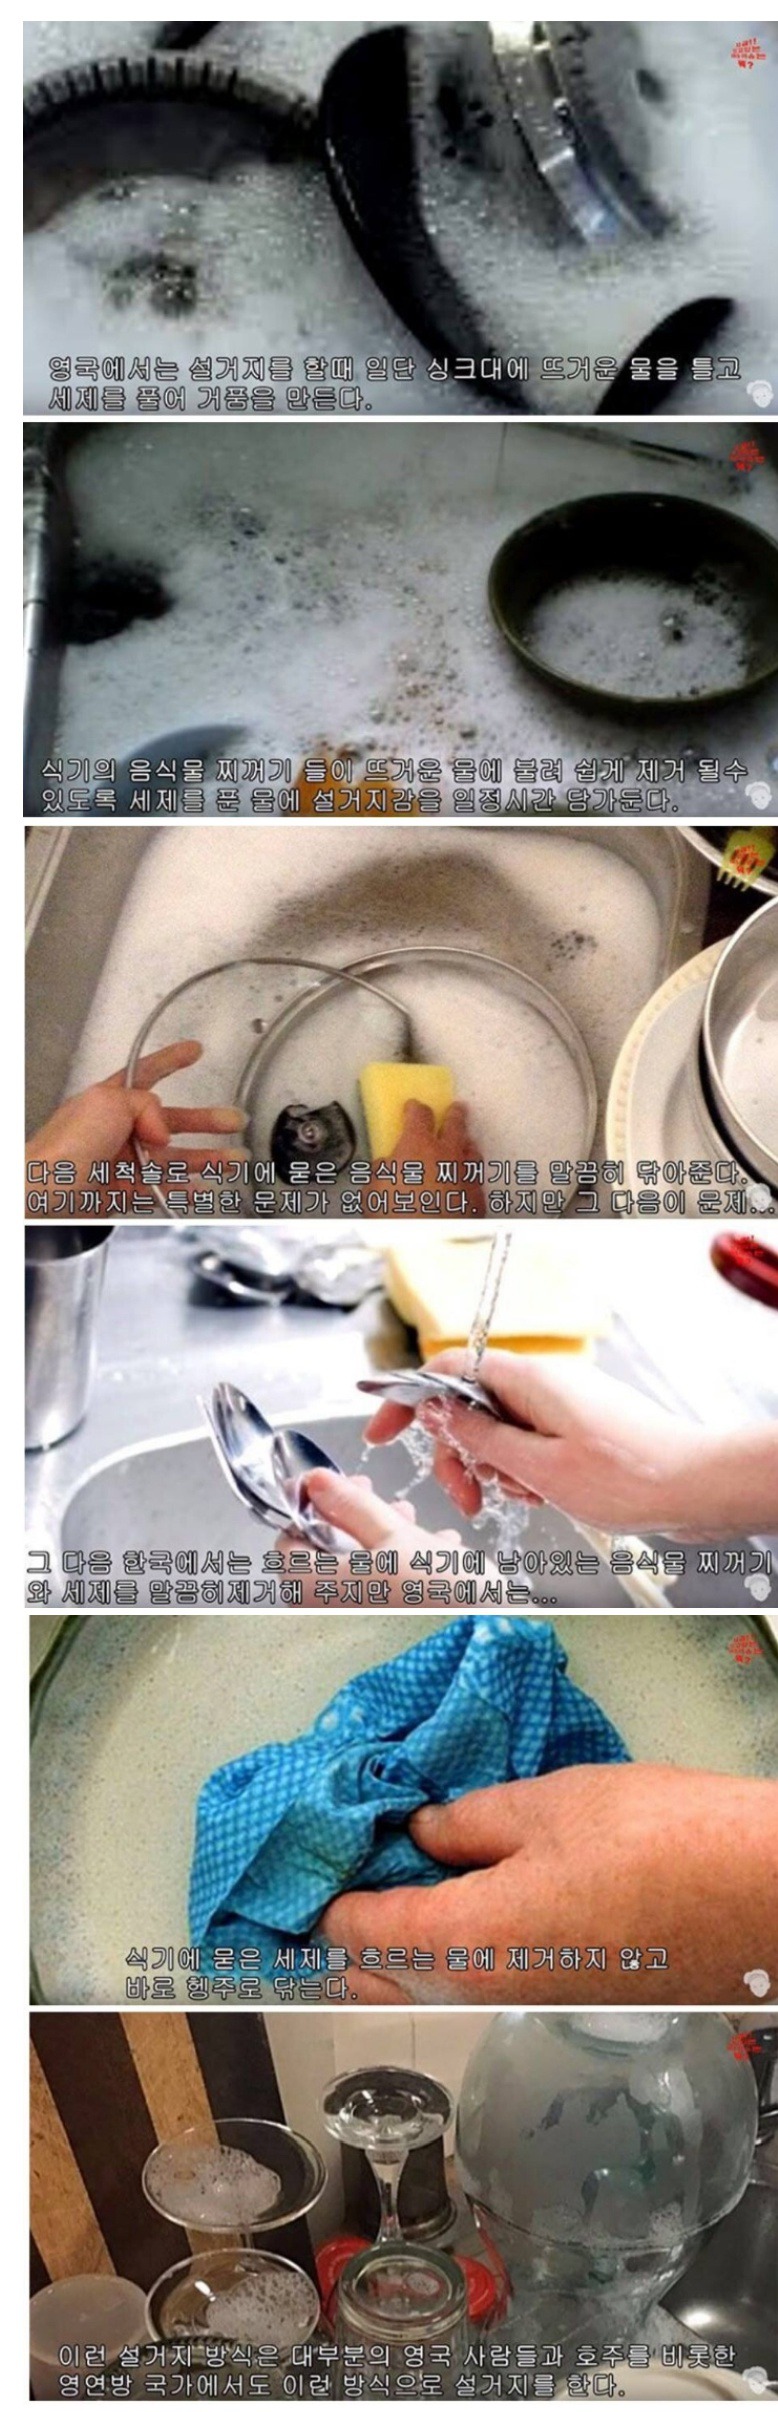 이해하기 힘든 설거지 문화